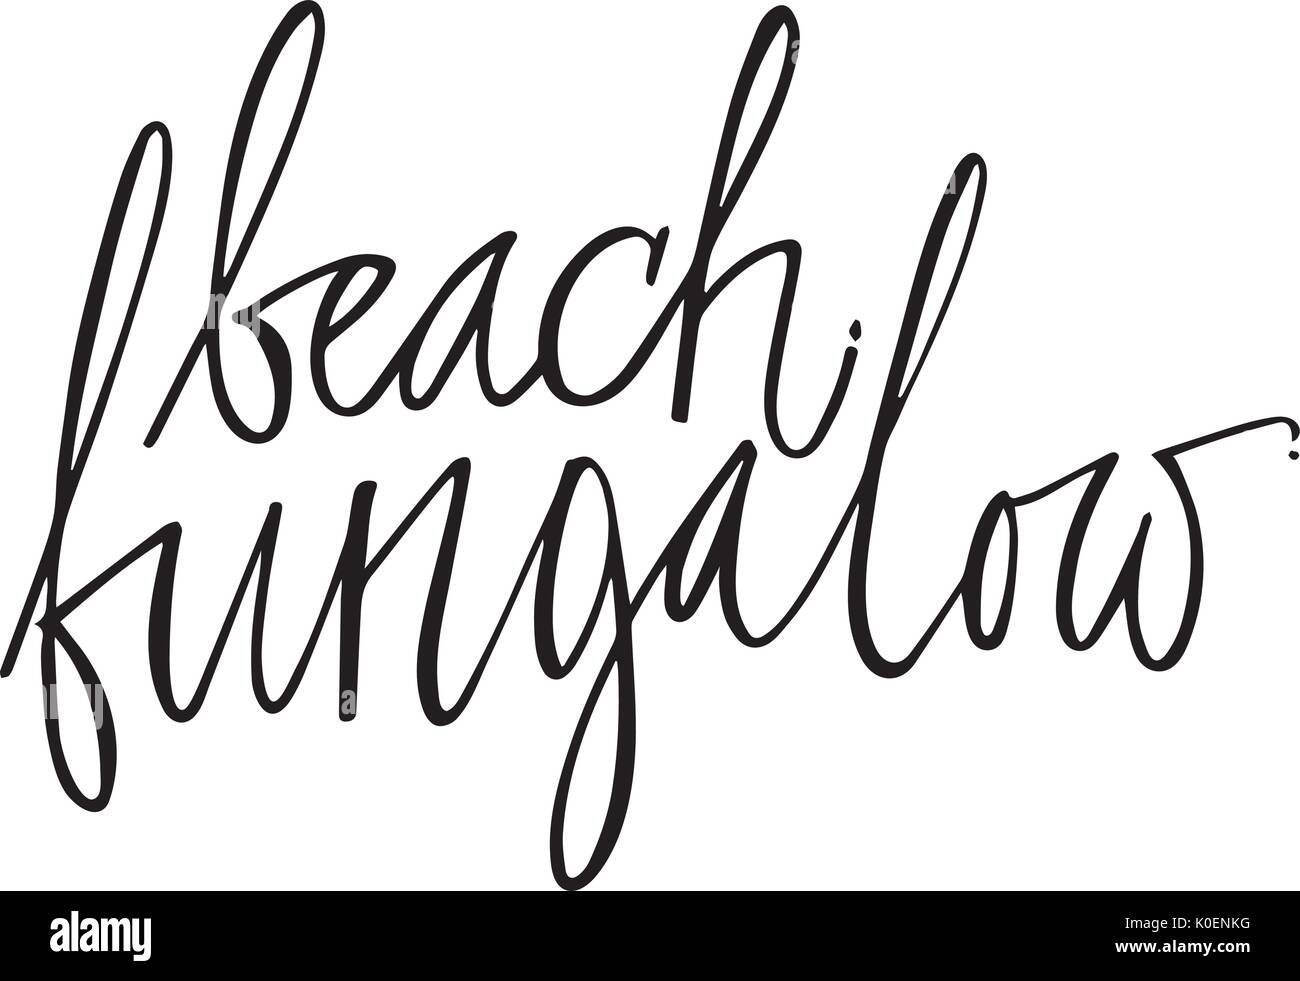 Bungalow plage part design lettrage pour les affiches, t-shirts, cartes, invitations, autocollants, bannières. Vecteur. Illustration de Vecteur